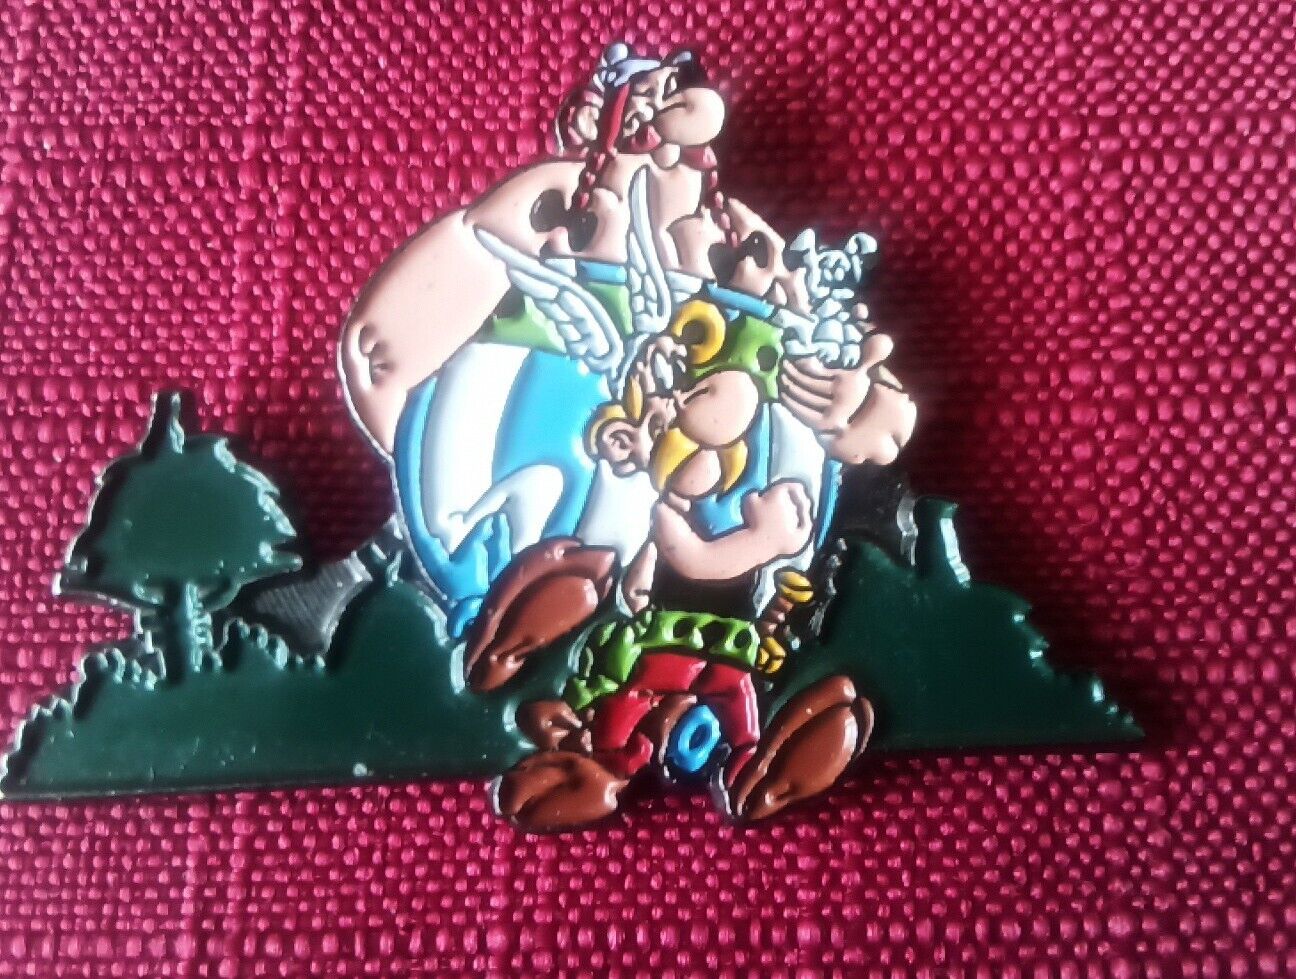 1991 Asterix Obelix Idefix Pins Signed by Parc Asterix